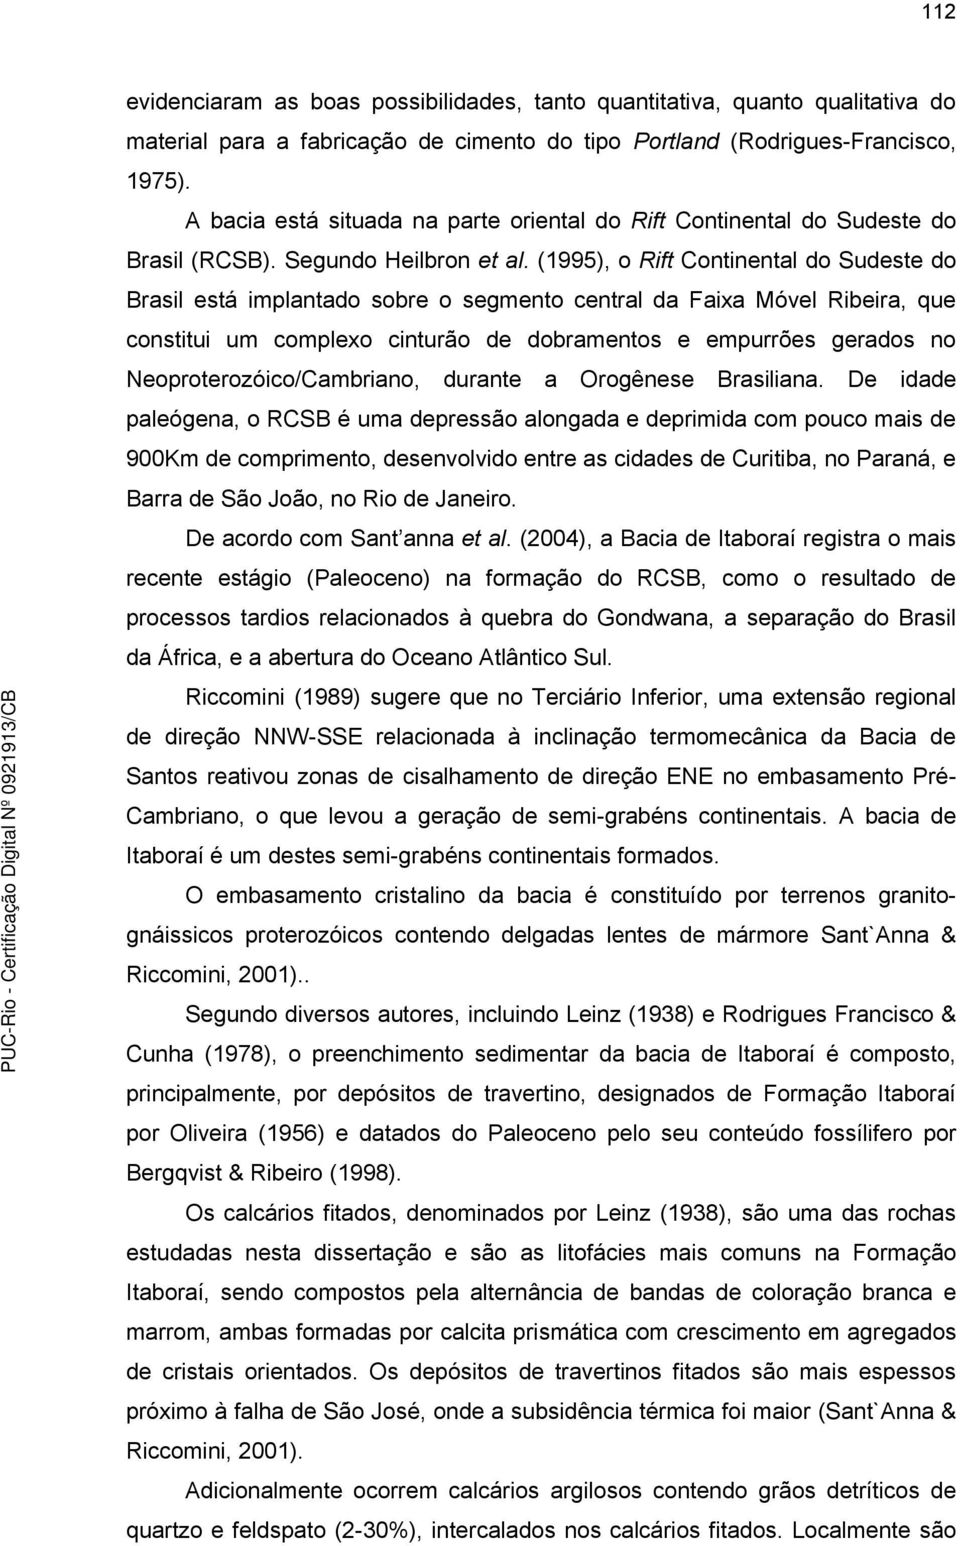 (1995), o Rift Continental do Sudeste do Brasil está implantado sobre o segmento central da Faixa Móvel Ribeira, que constitui um complexo cinturão de dobramentos e empurrões gerados no